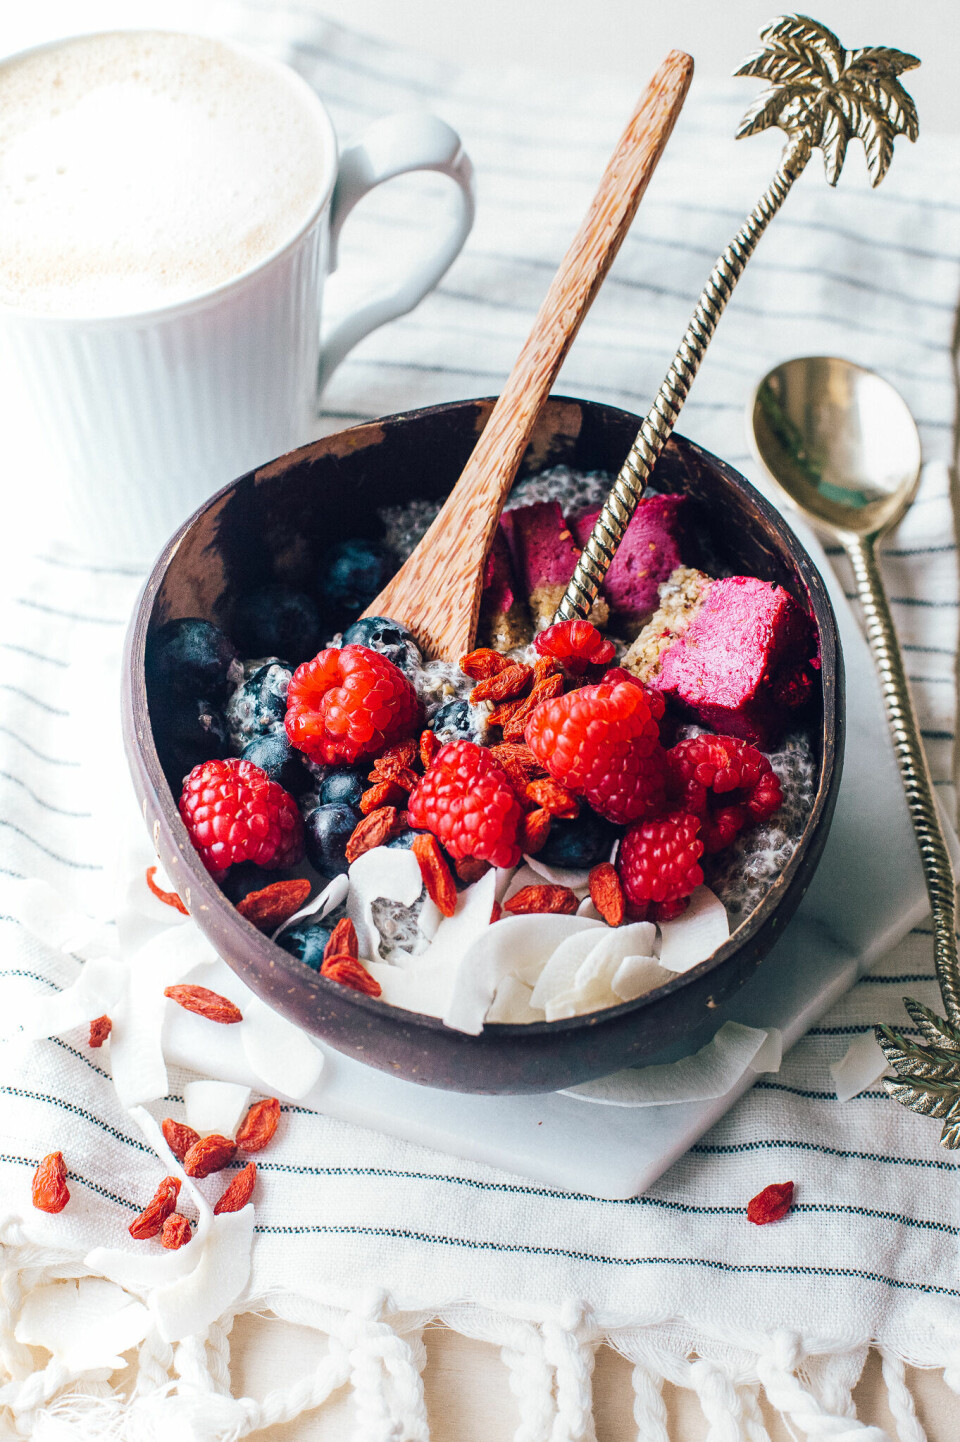 Overnight chiapudding: Det er ikke hver morgen det frister å bruke lang tid på å stelle i stand en fresh frokost. Derfor elsker vi næringsrike frokoster som lager seg selv over natten. Stå opp til en sunn, smakfull og vakker frokost, som vil gi deg (og smaksløkene dine) den morgenen du fortjener.





Better Bowls er en norsk merkevare og beve­gelse som jobber med å fremme en sunnere og mer bærekraftig livsstil. De samler kokosnøttskall som ellers ville ha blitt kastet, og kutter, renser og polerer disse til å bli vakre og bærekraftige kokosnøttskåler.

Skålene er tilgjengelig i nettbutikken betterbowls.no, sammen med en rekke andre produkter ment for å gjøre det enklere og morsommere for deg å nyte sunne og smakfulle bowls på ditt eget kjøkken.

Oppskrifter og inspirasjon får du ved å følge Better Bowls på @betterbowlsno.










Overnight chiapudding med raw-kake